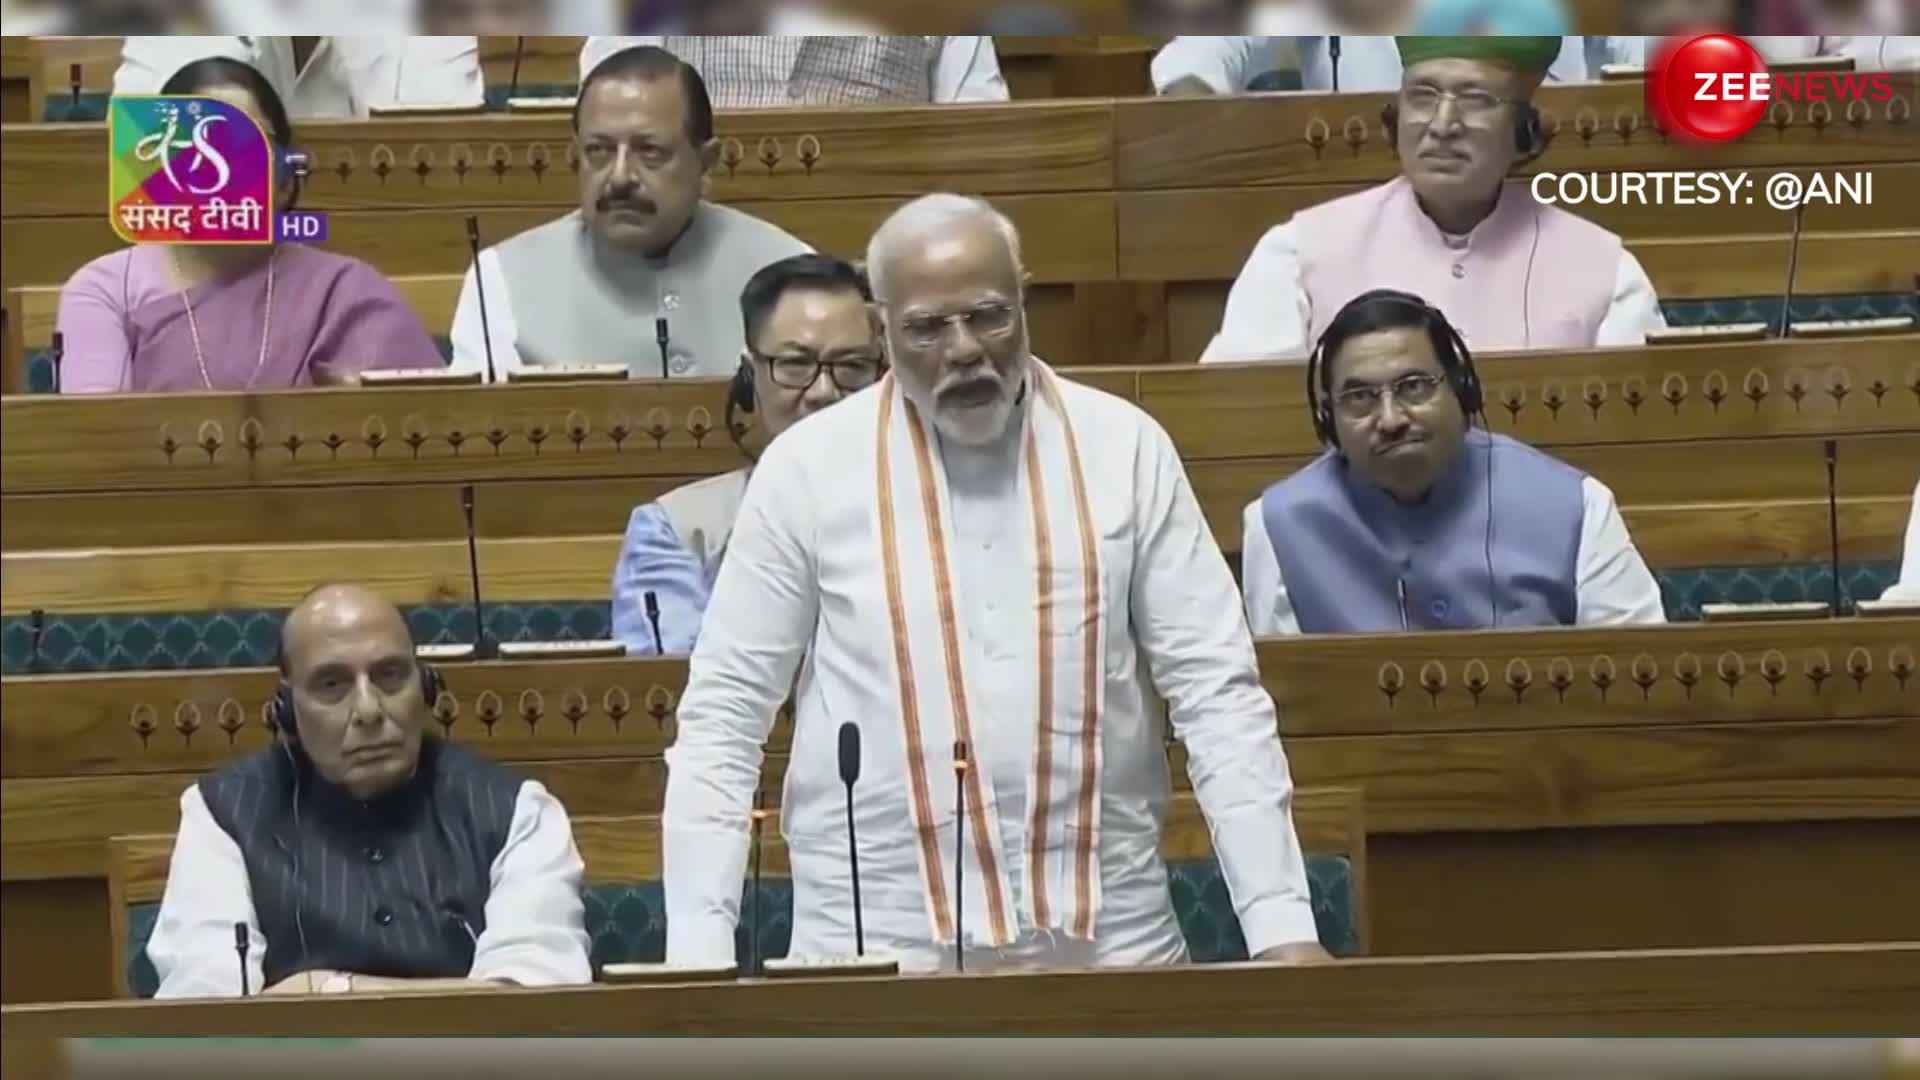 संसद में राहुल गांधी ने ऐसा क्या कहा जिसका PM मोदी ने बीच में खड़े होकर किया विरोध, देखें VIDEO